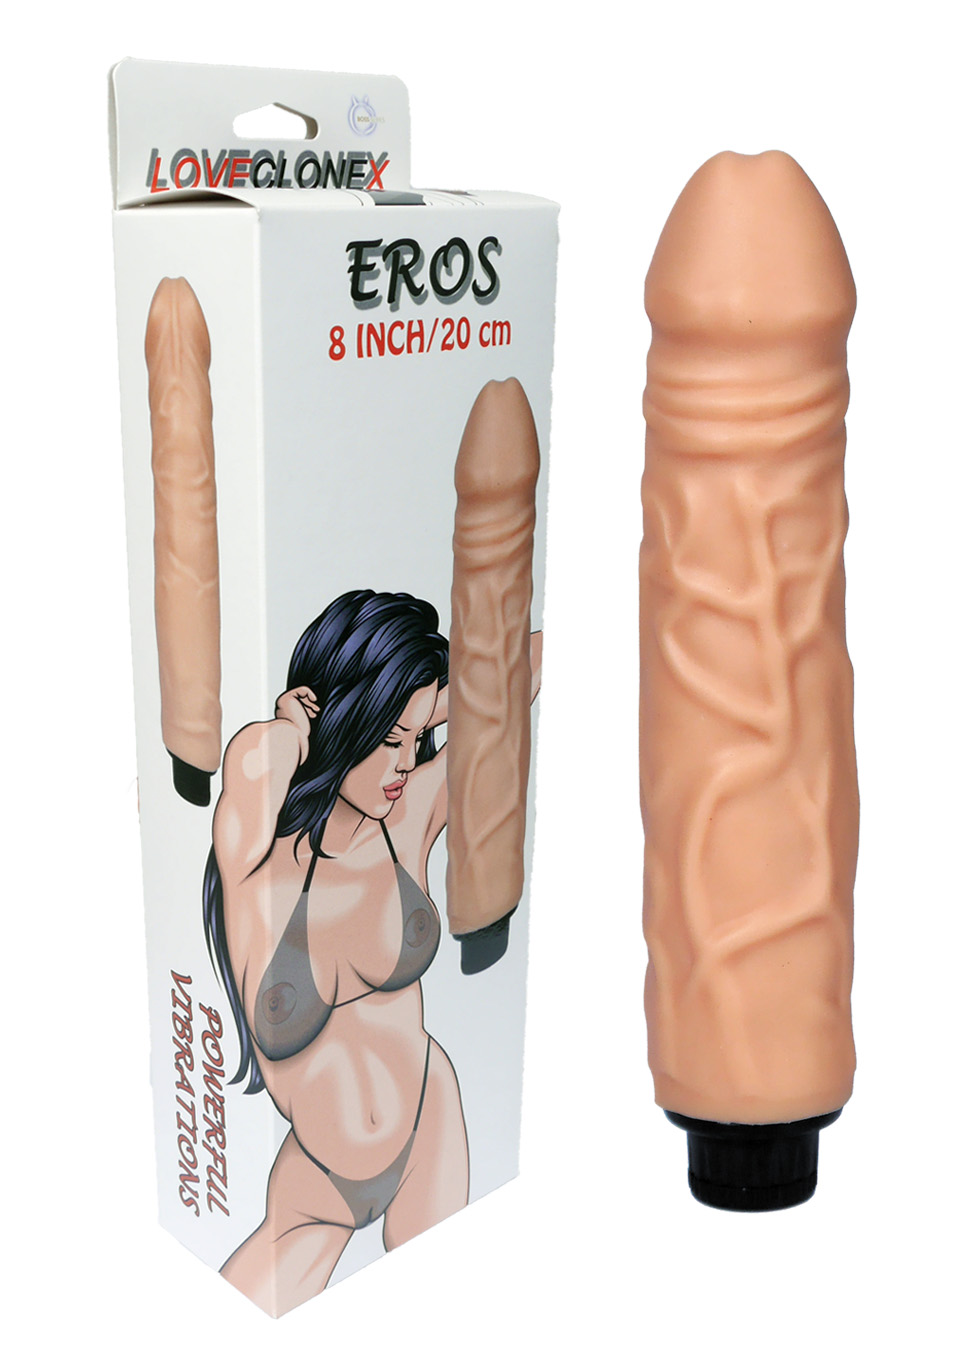 Naturalny kształ wibrator penis sex żyłki 23cm